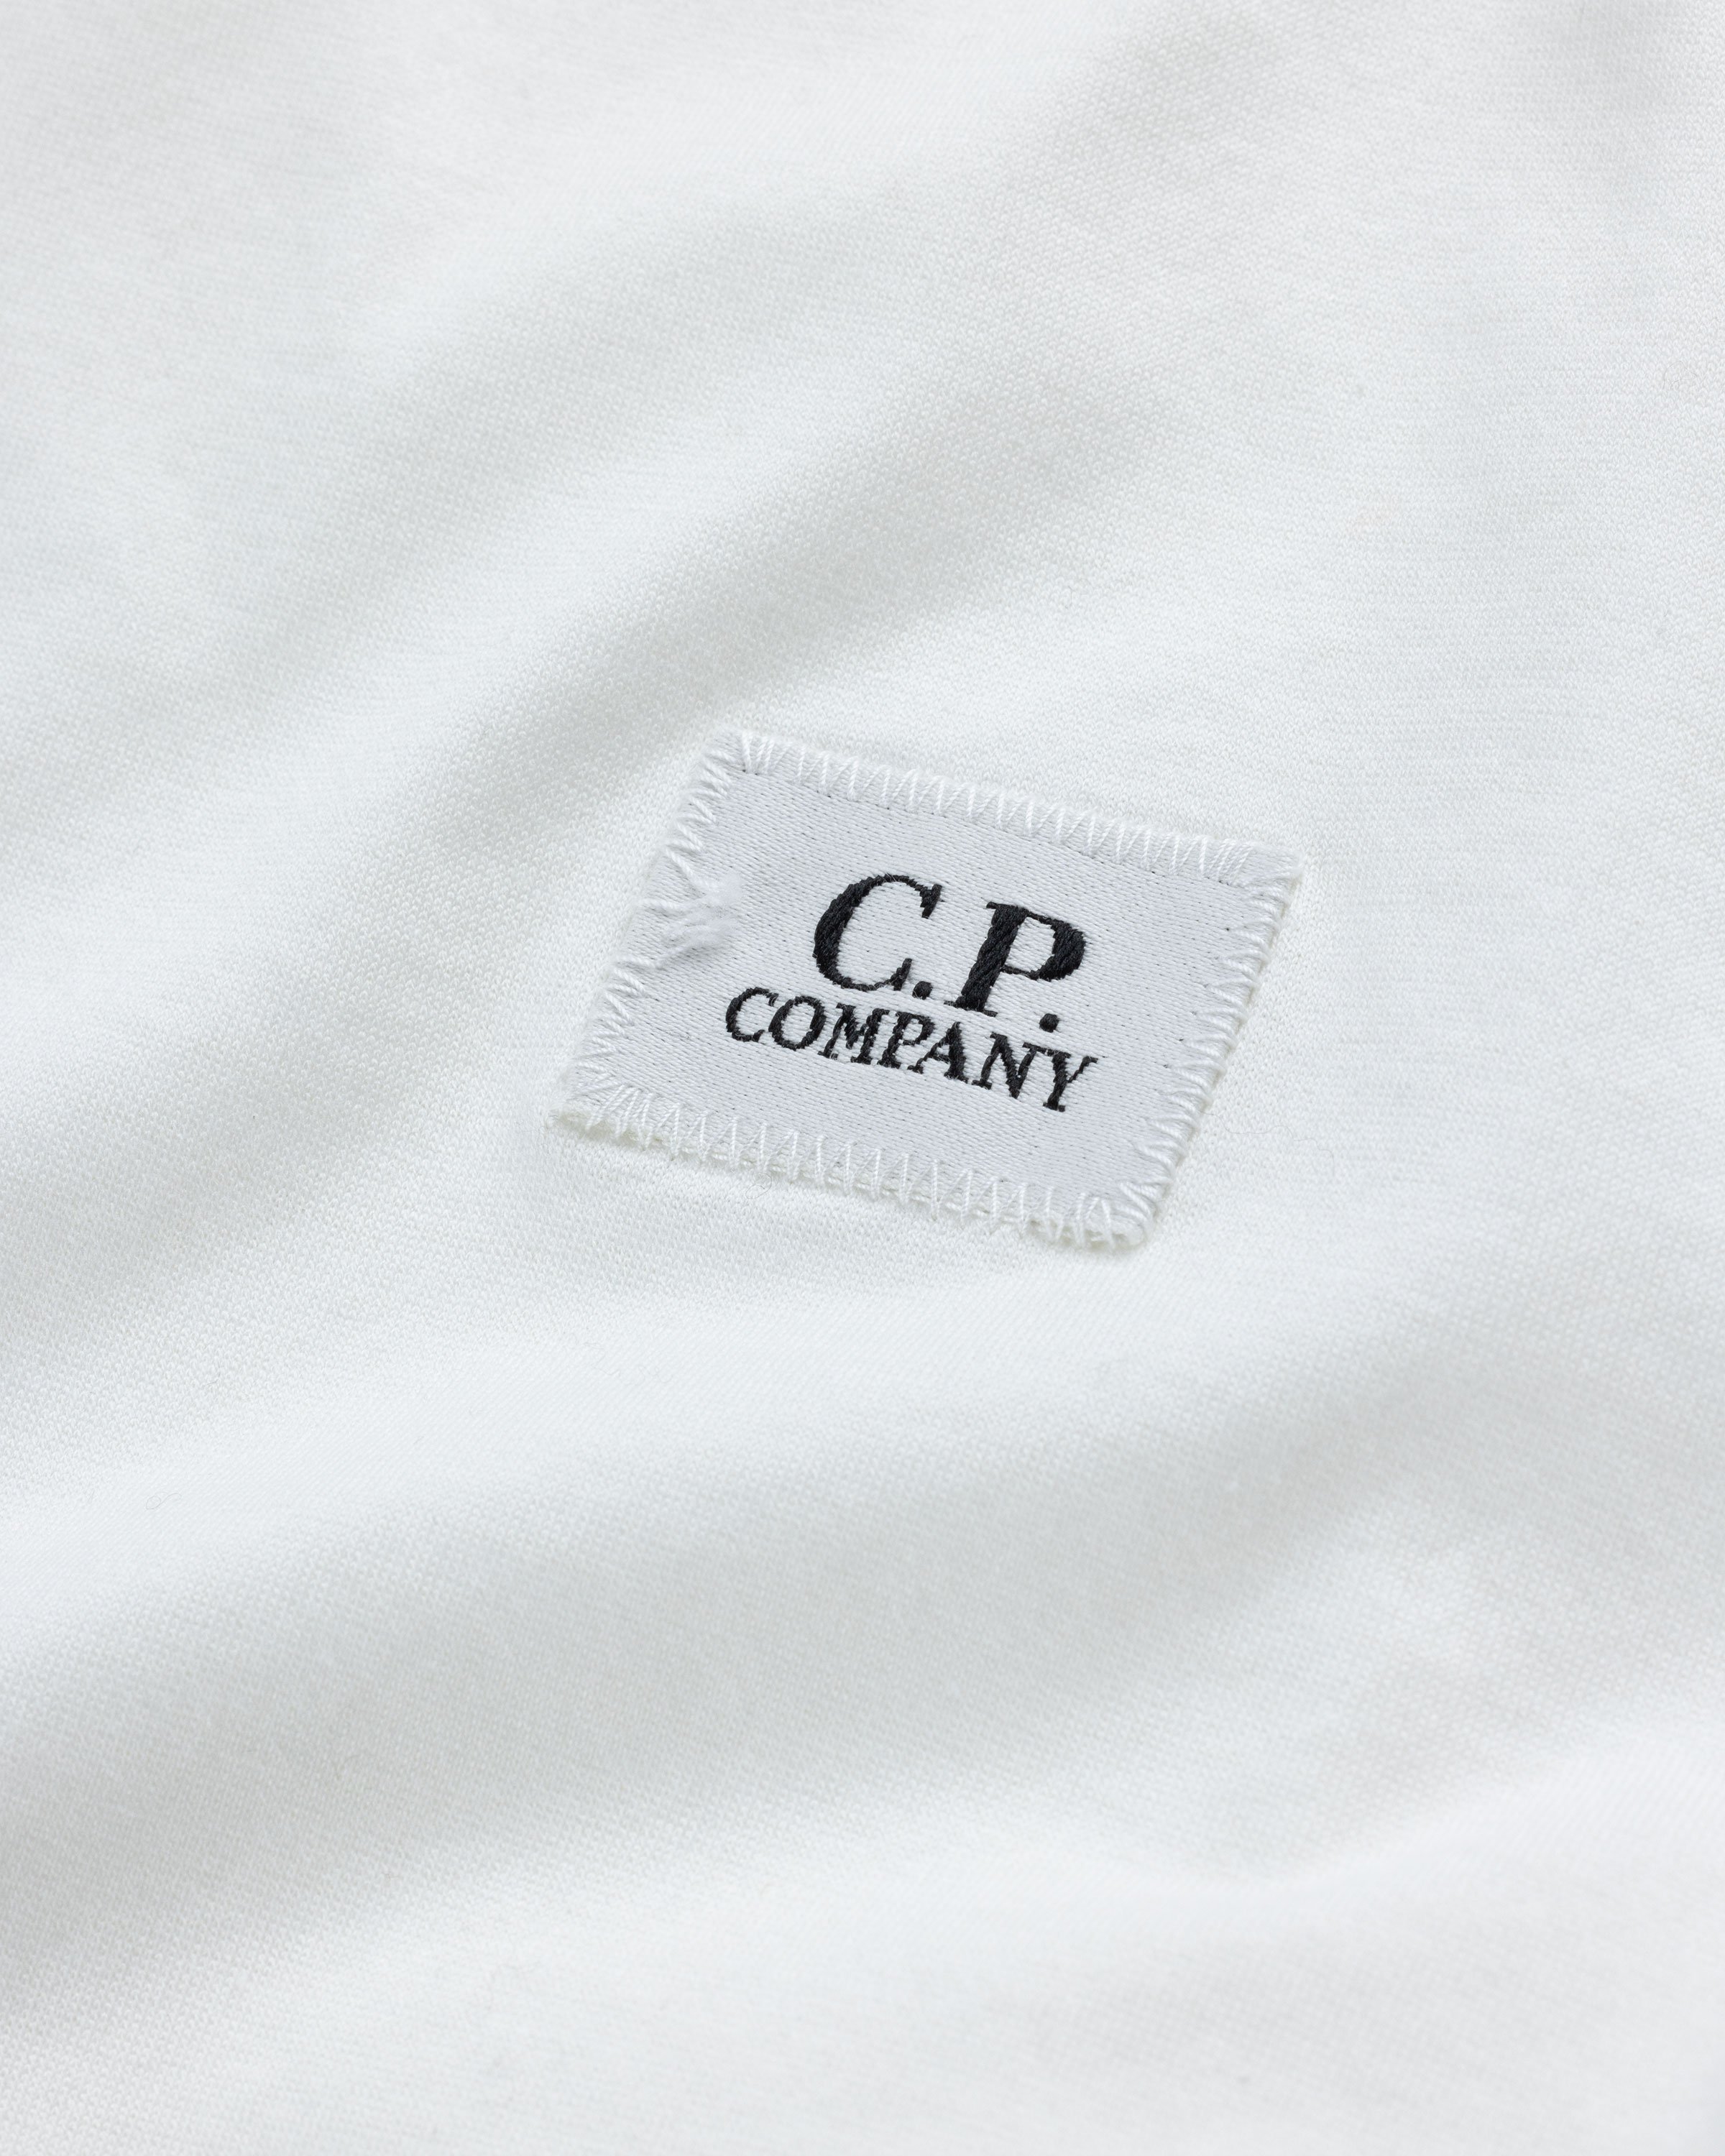 C.P. Company - T-Shirts - Long Sleeve - Clothing - White - Image 6